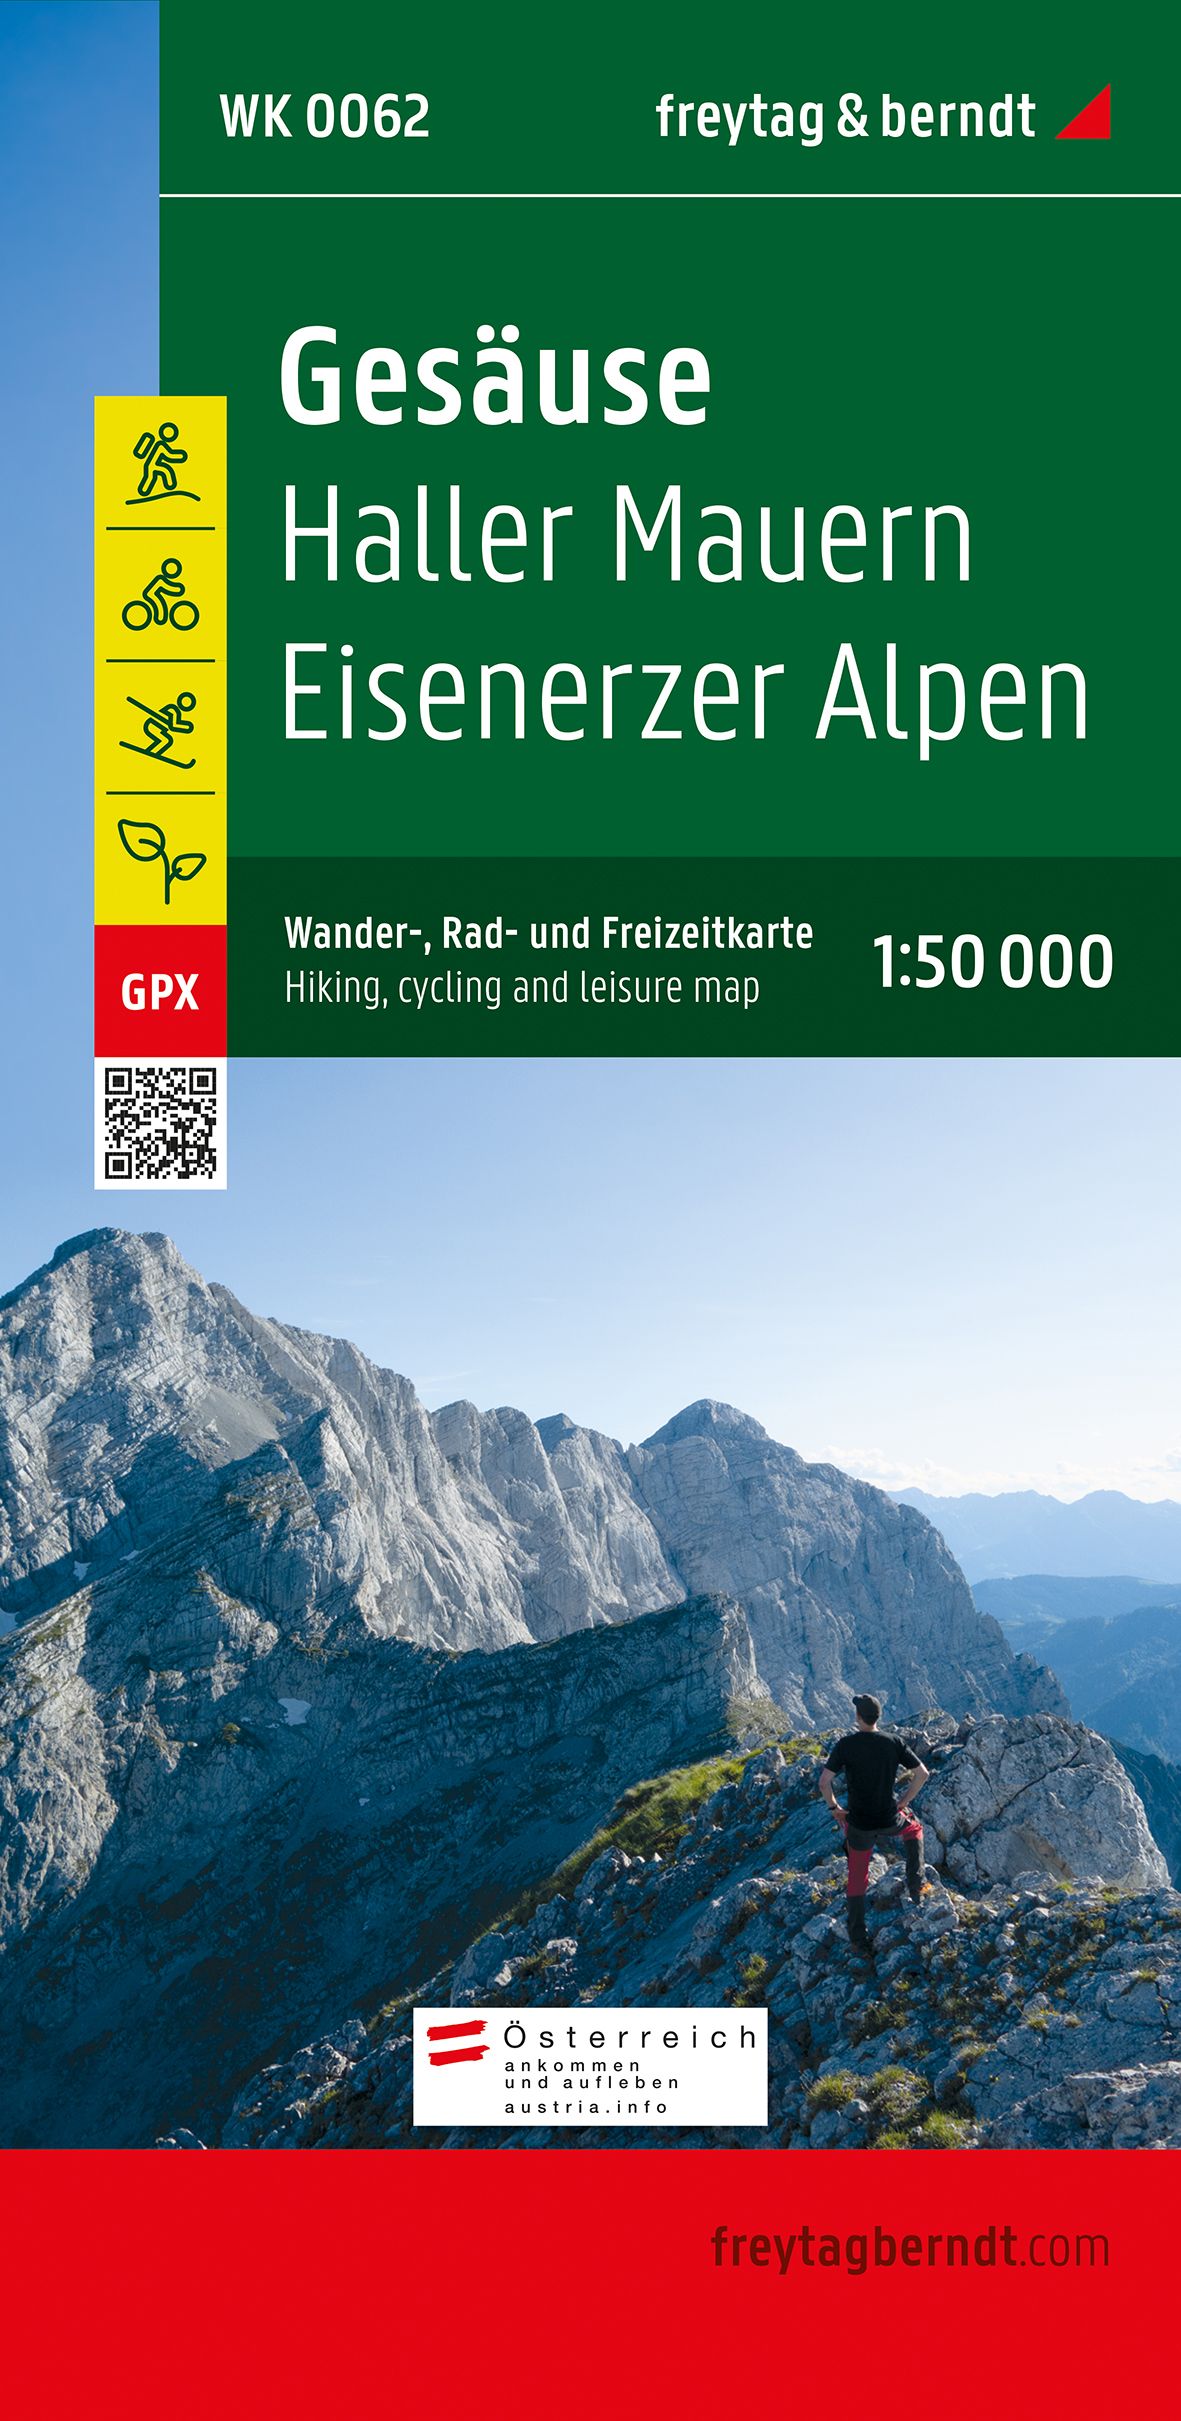 Freytag & Berndt Gesäuse, Ennstaler Alpen (WK062)